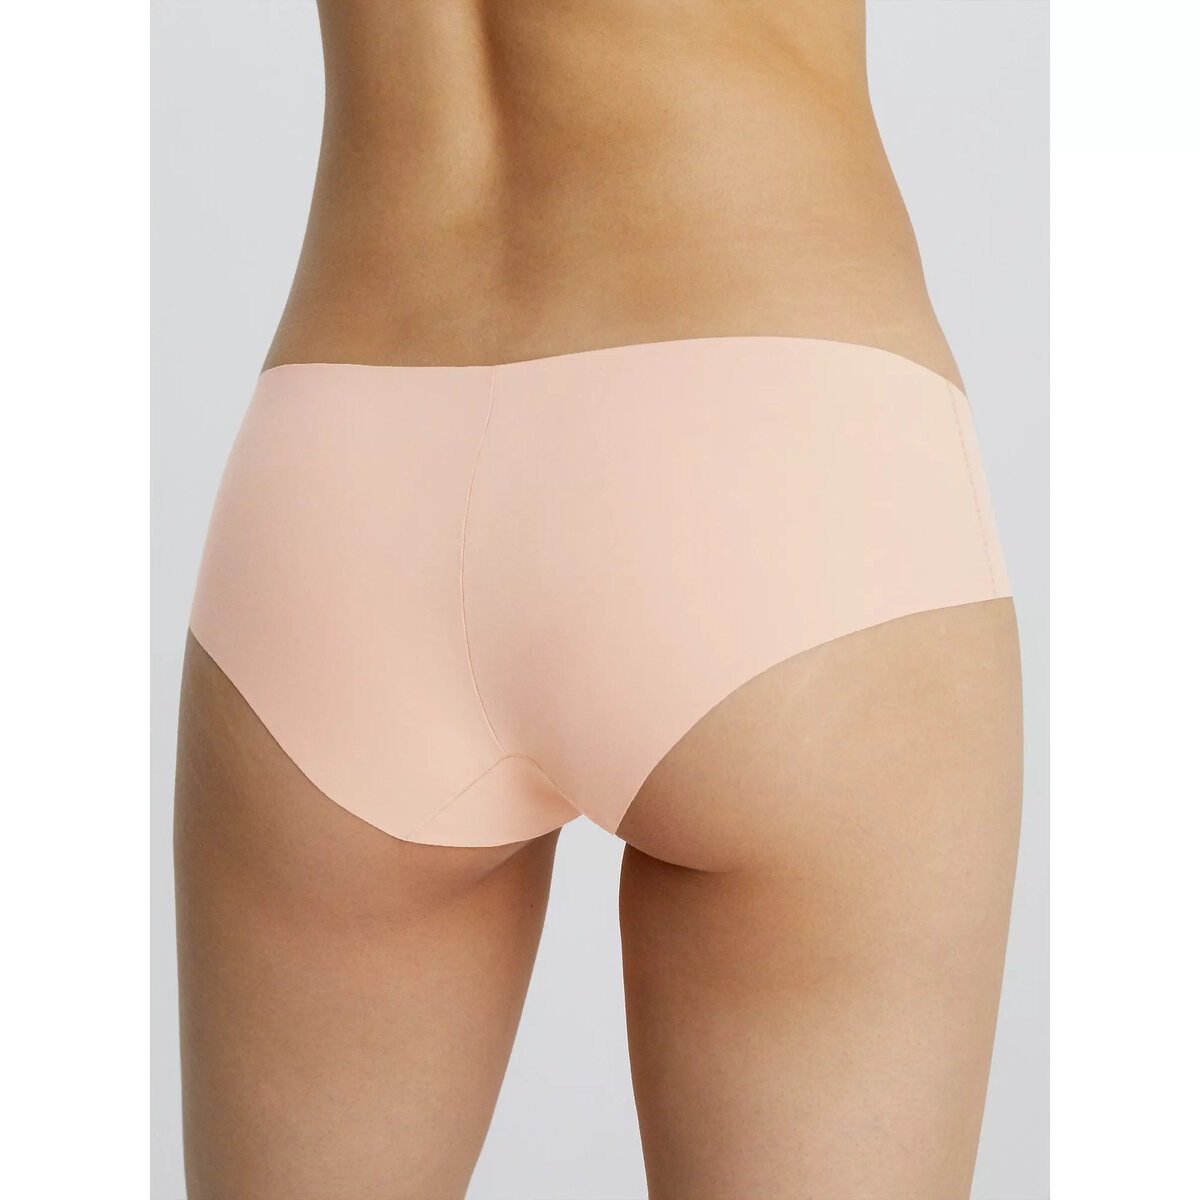 Moderní dámské kalhotky - Calvin Klein HIPSTER, L i652_0000D3429E1LC004